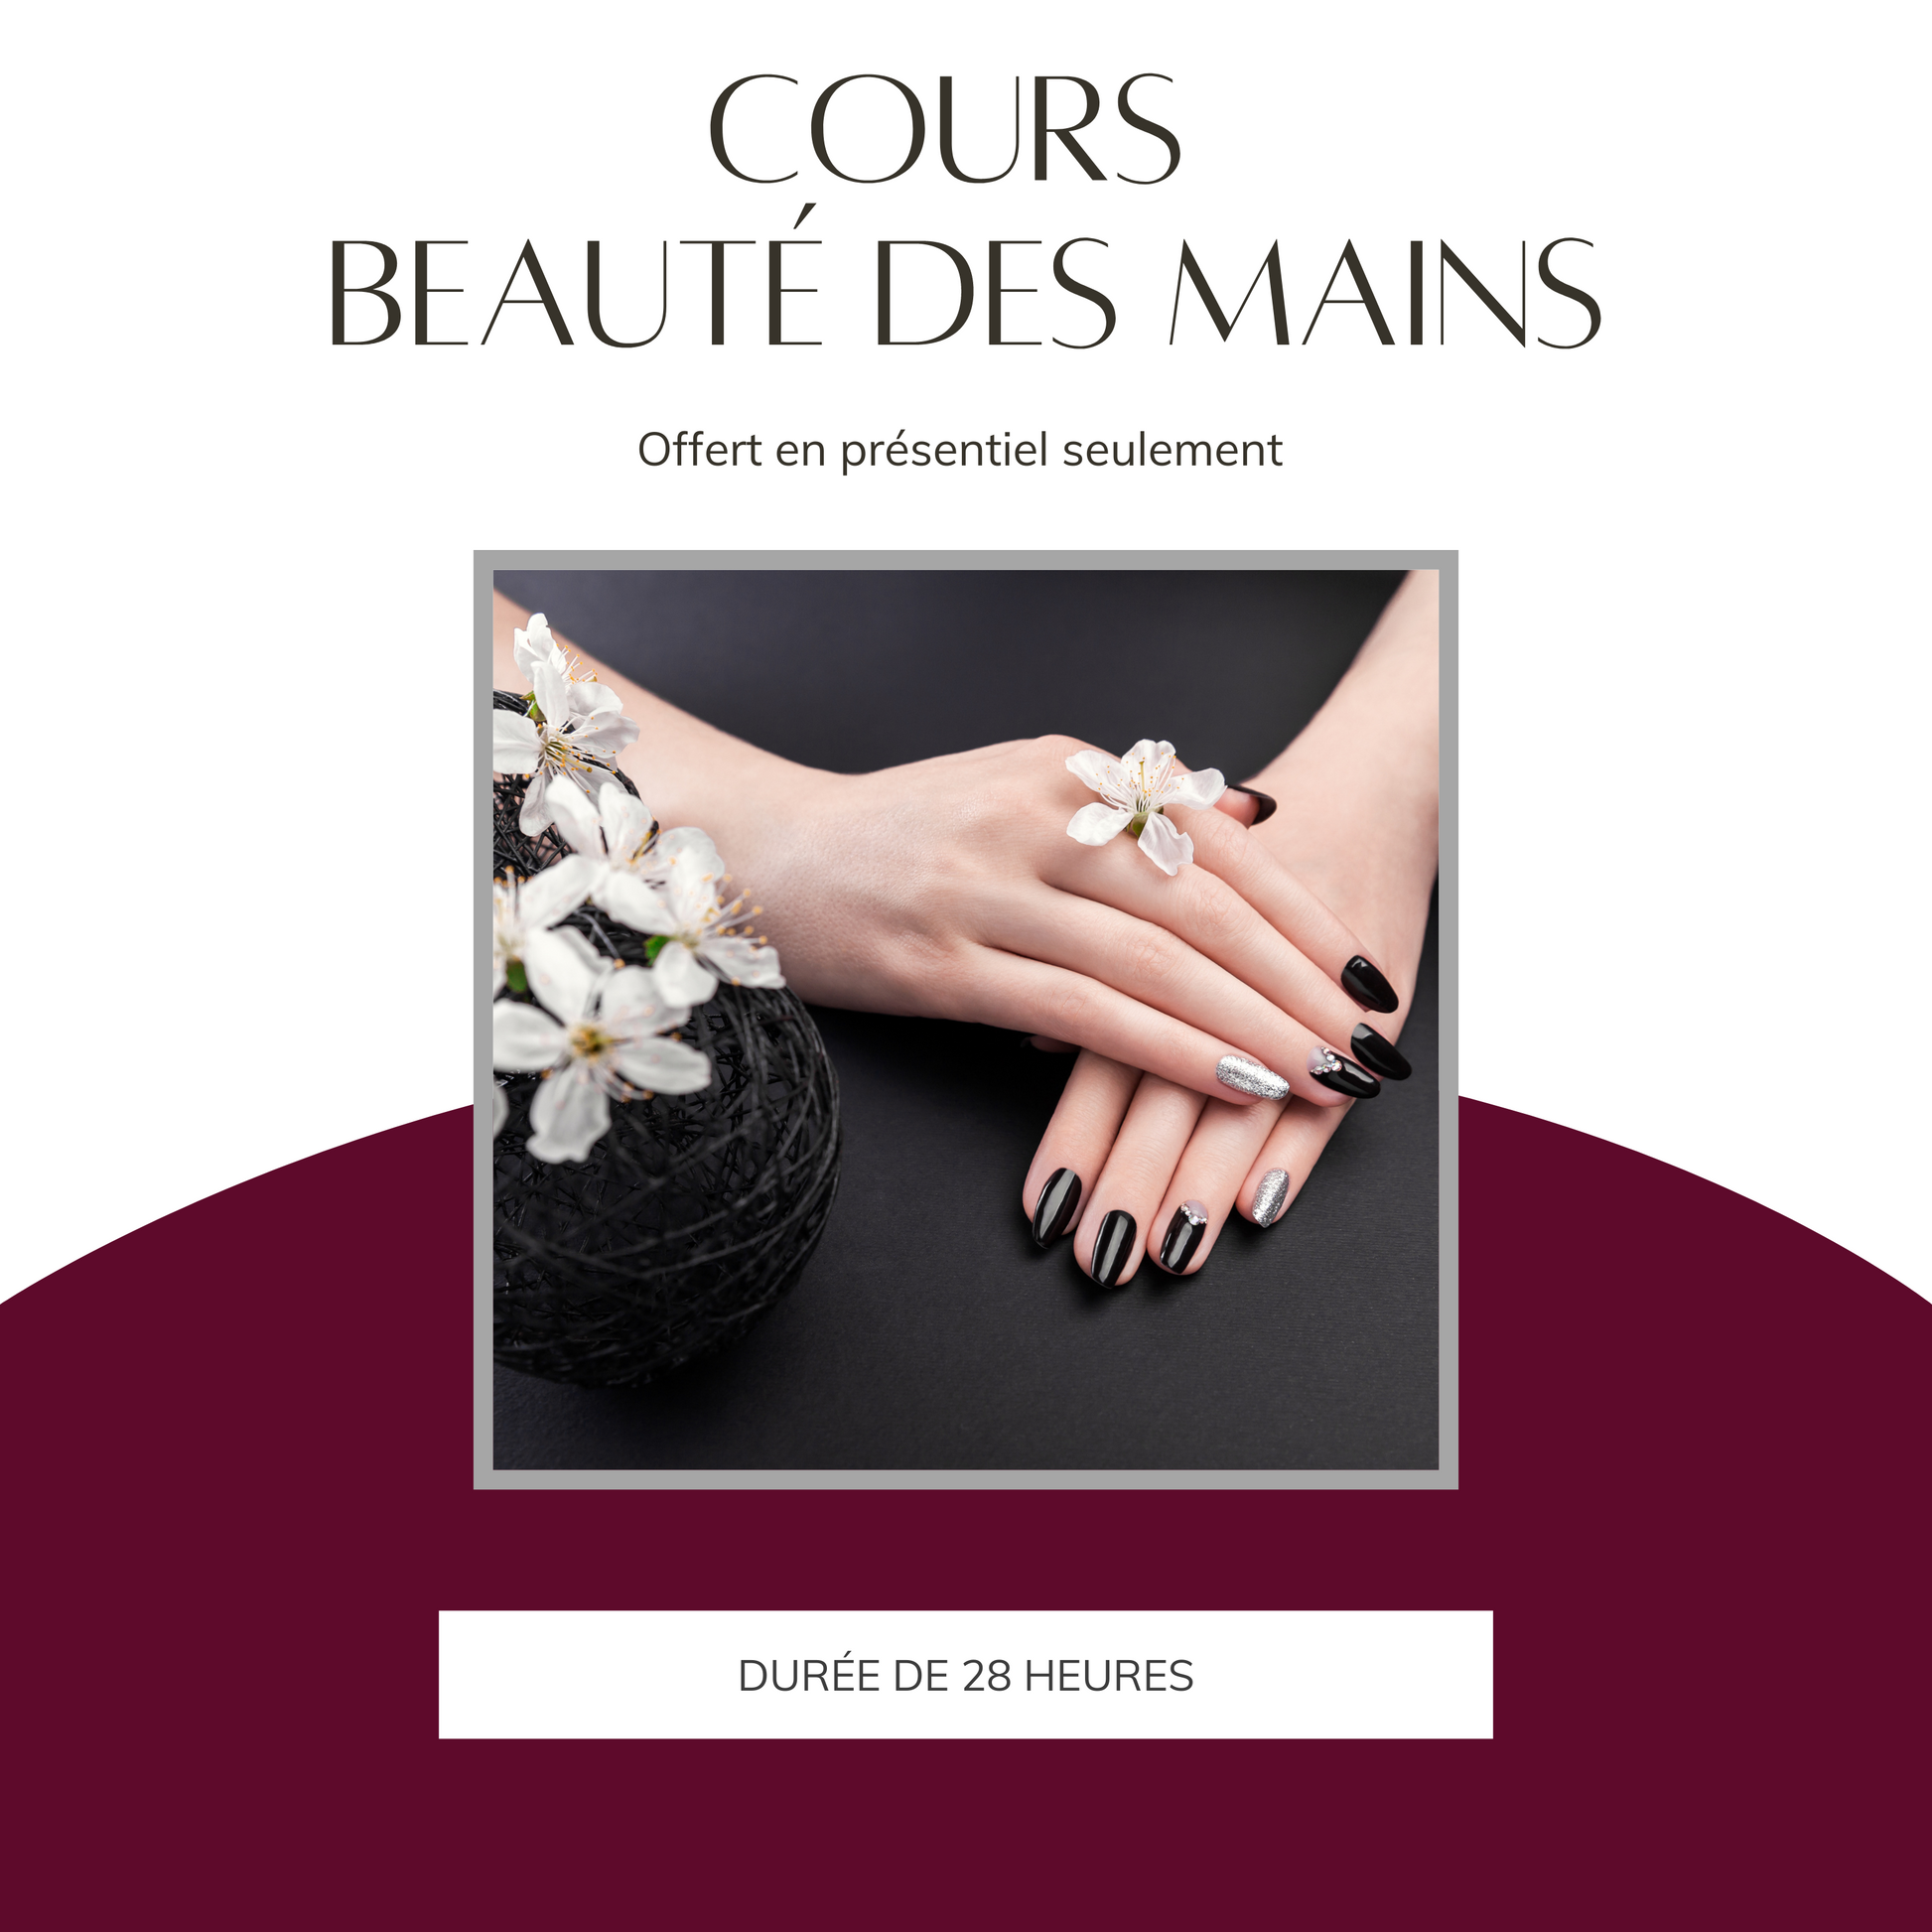 Cours Beauté des Mains* (6726926860354)